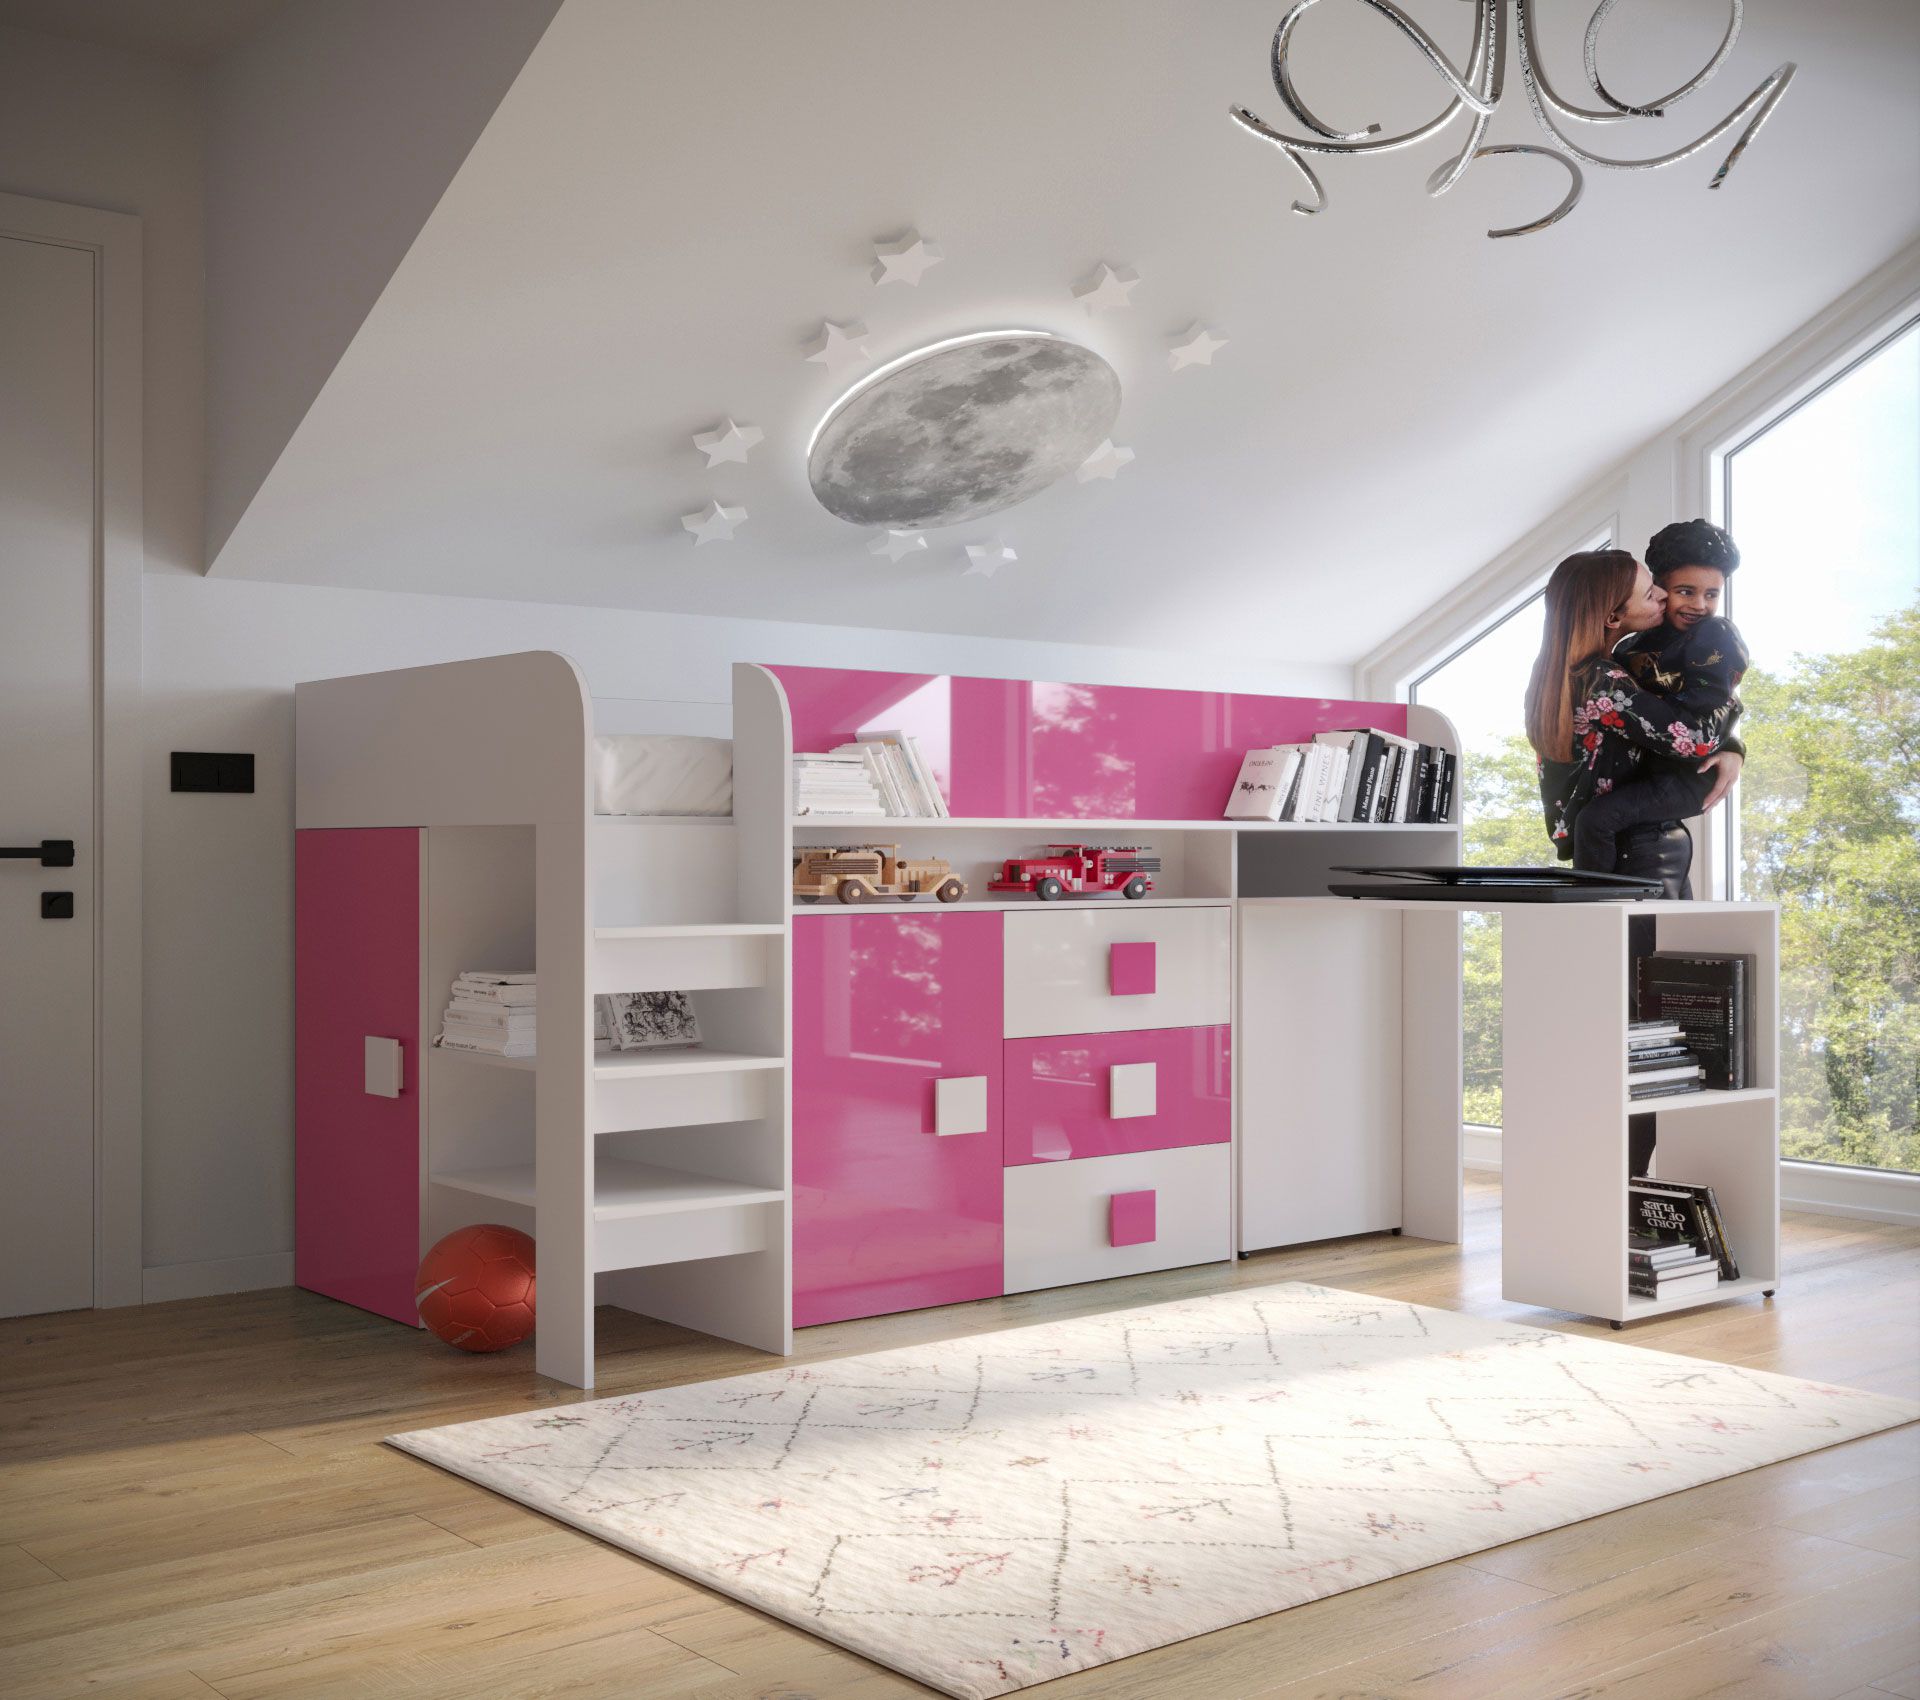 Stijlvol functioneel bed / kinderbed met opbergruimte en bureau Jura 53, ABS randbescherming, kleur: wit / roze, ligoppervlak: 90 x 200 cm, veelzijdige gebruiksmogelijkheden